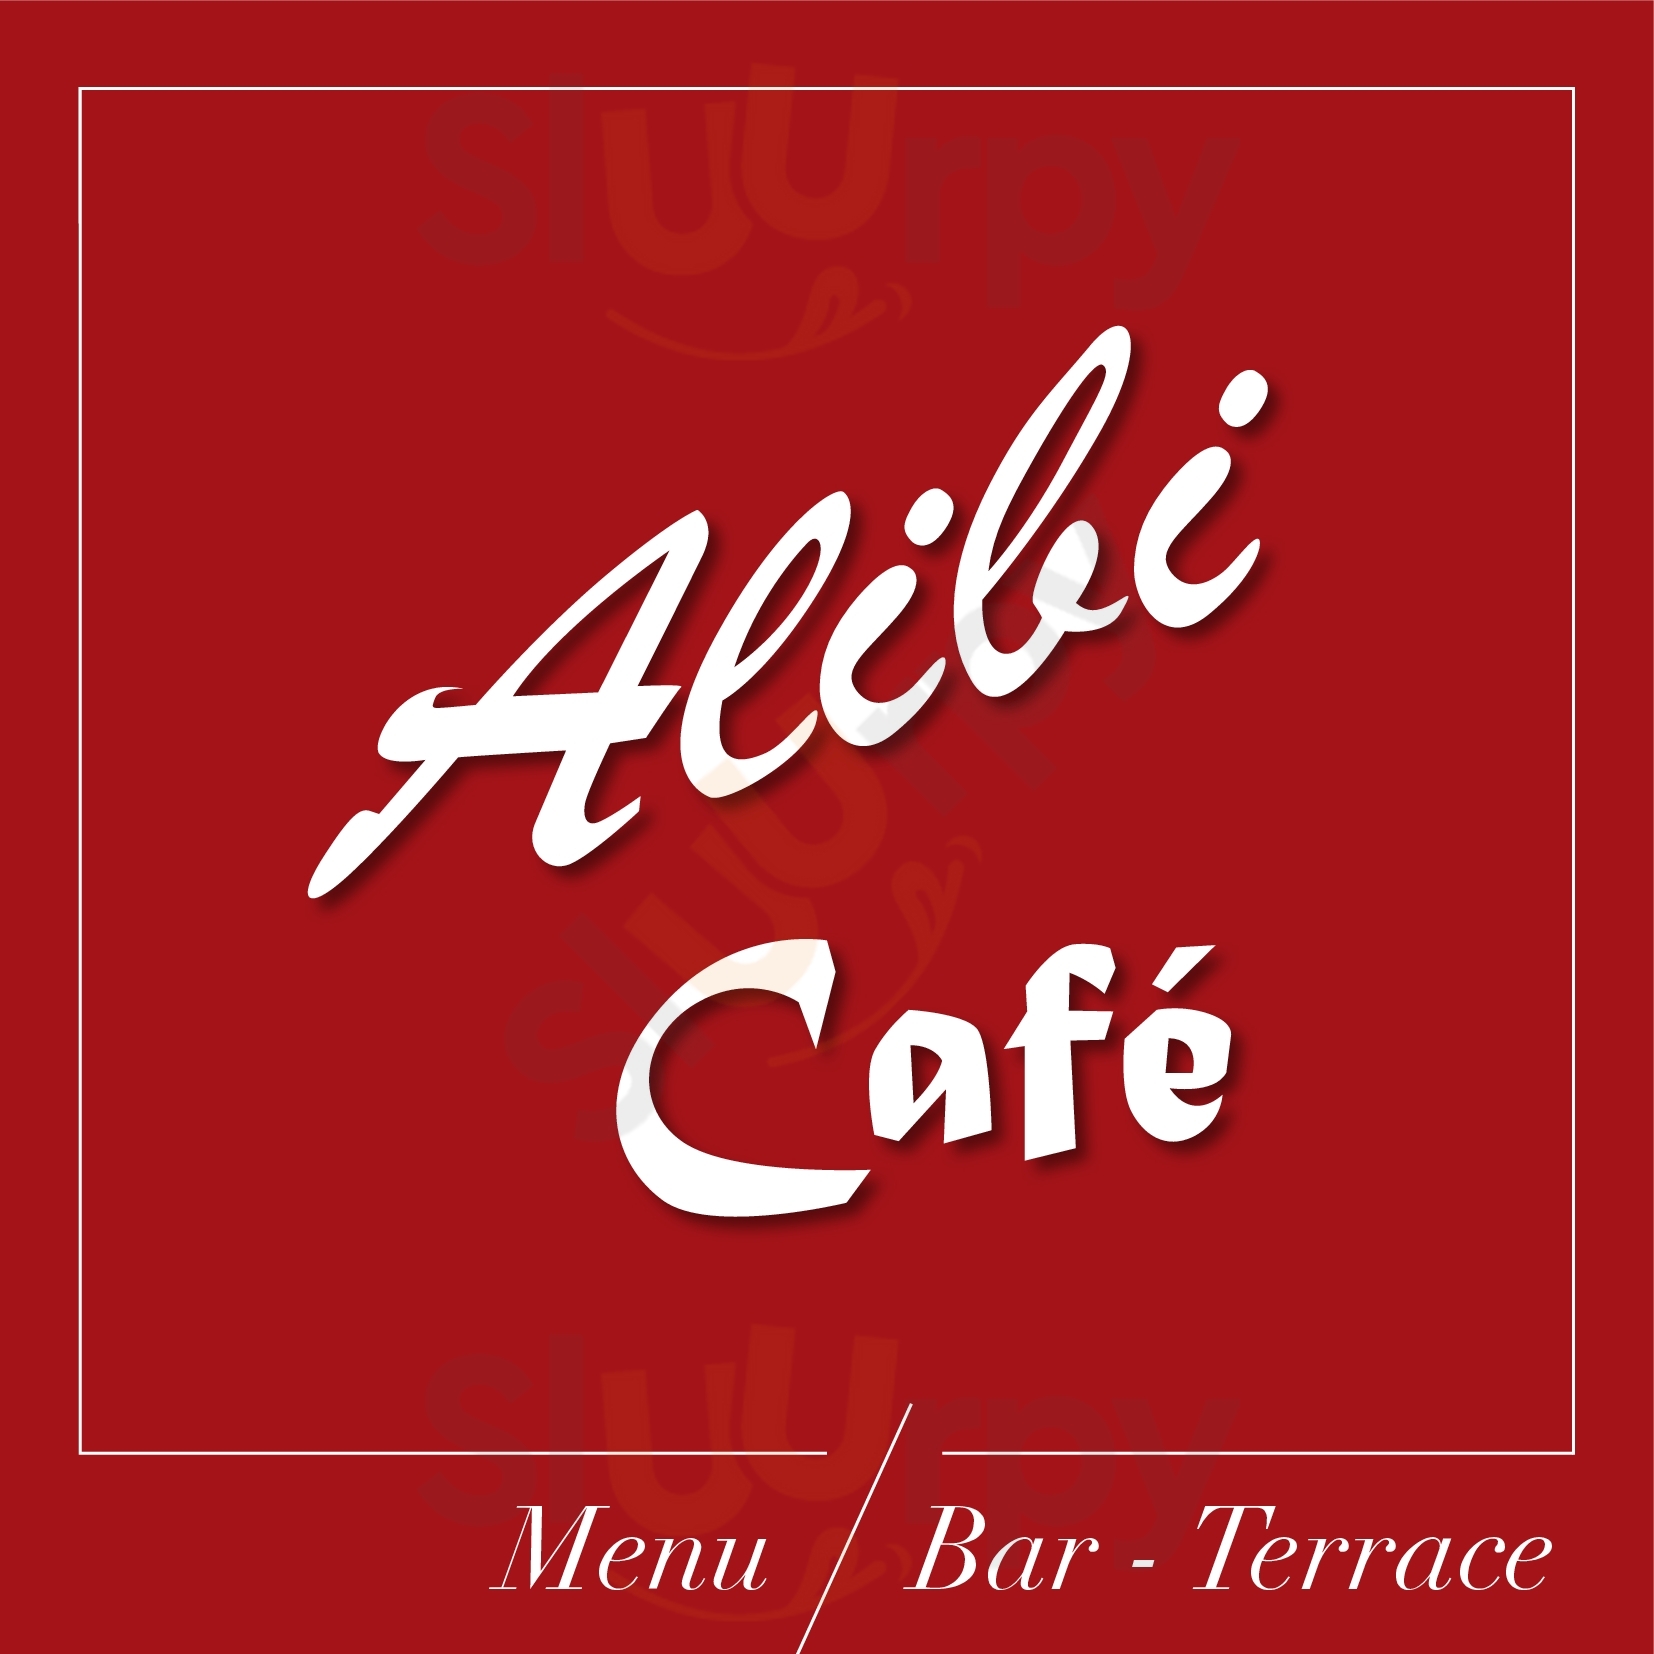 Alibi Cafe Livigno menù 1 pagina